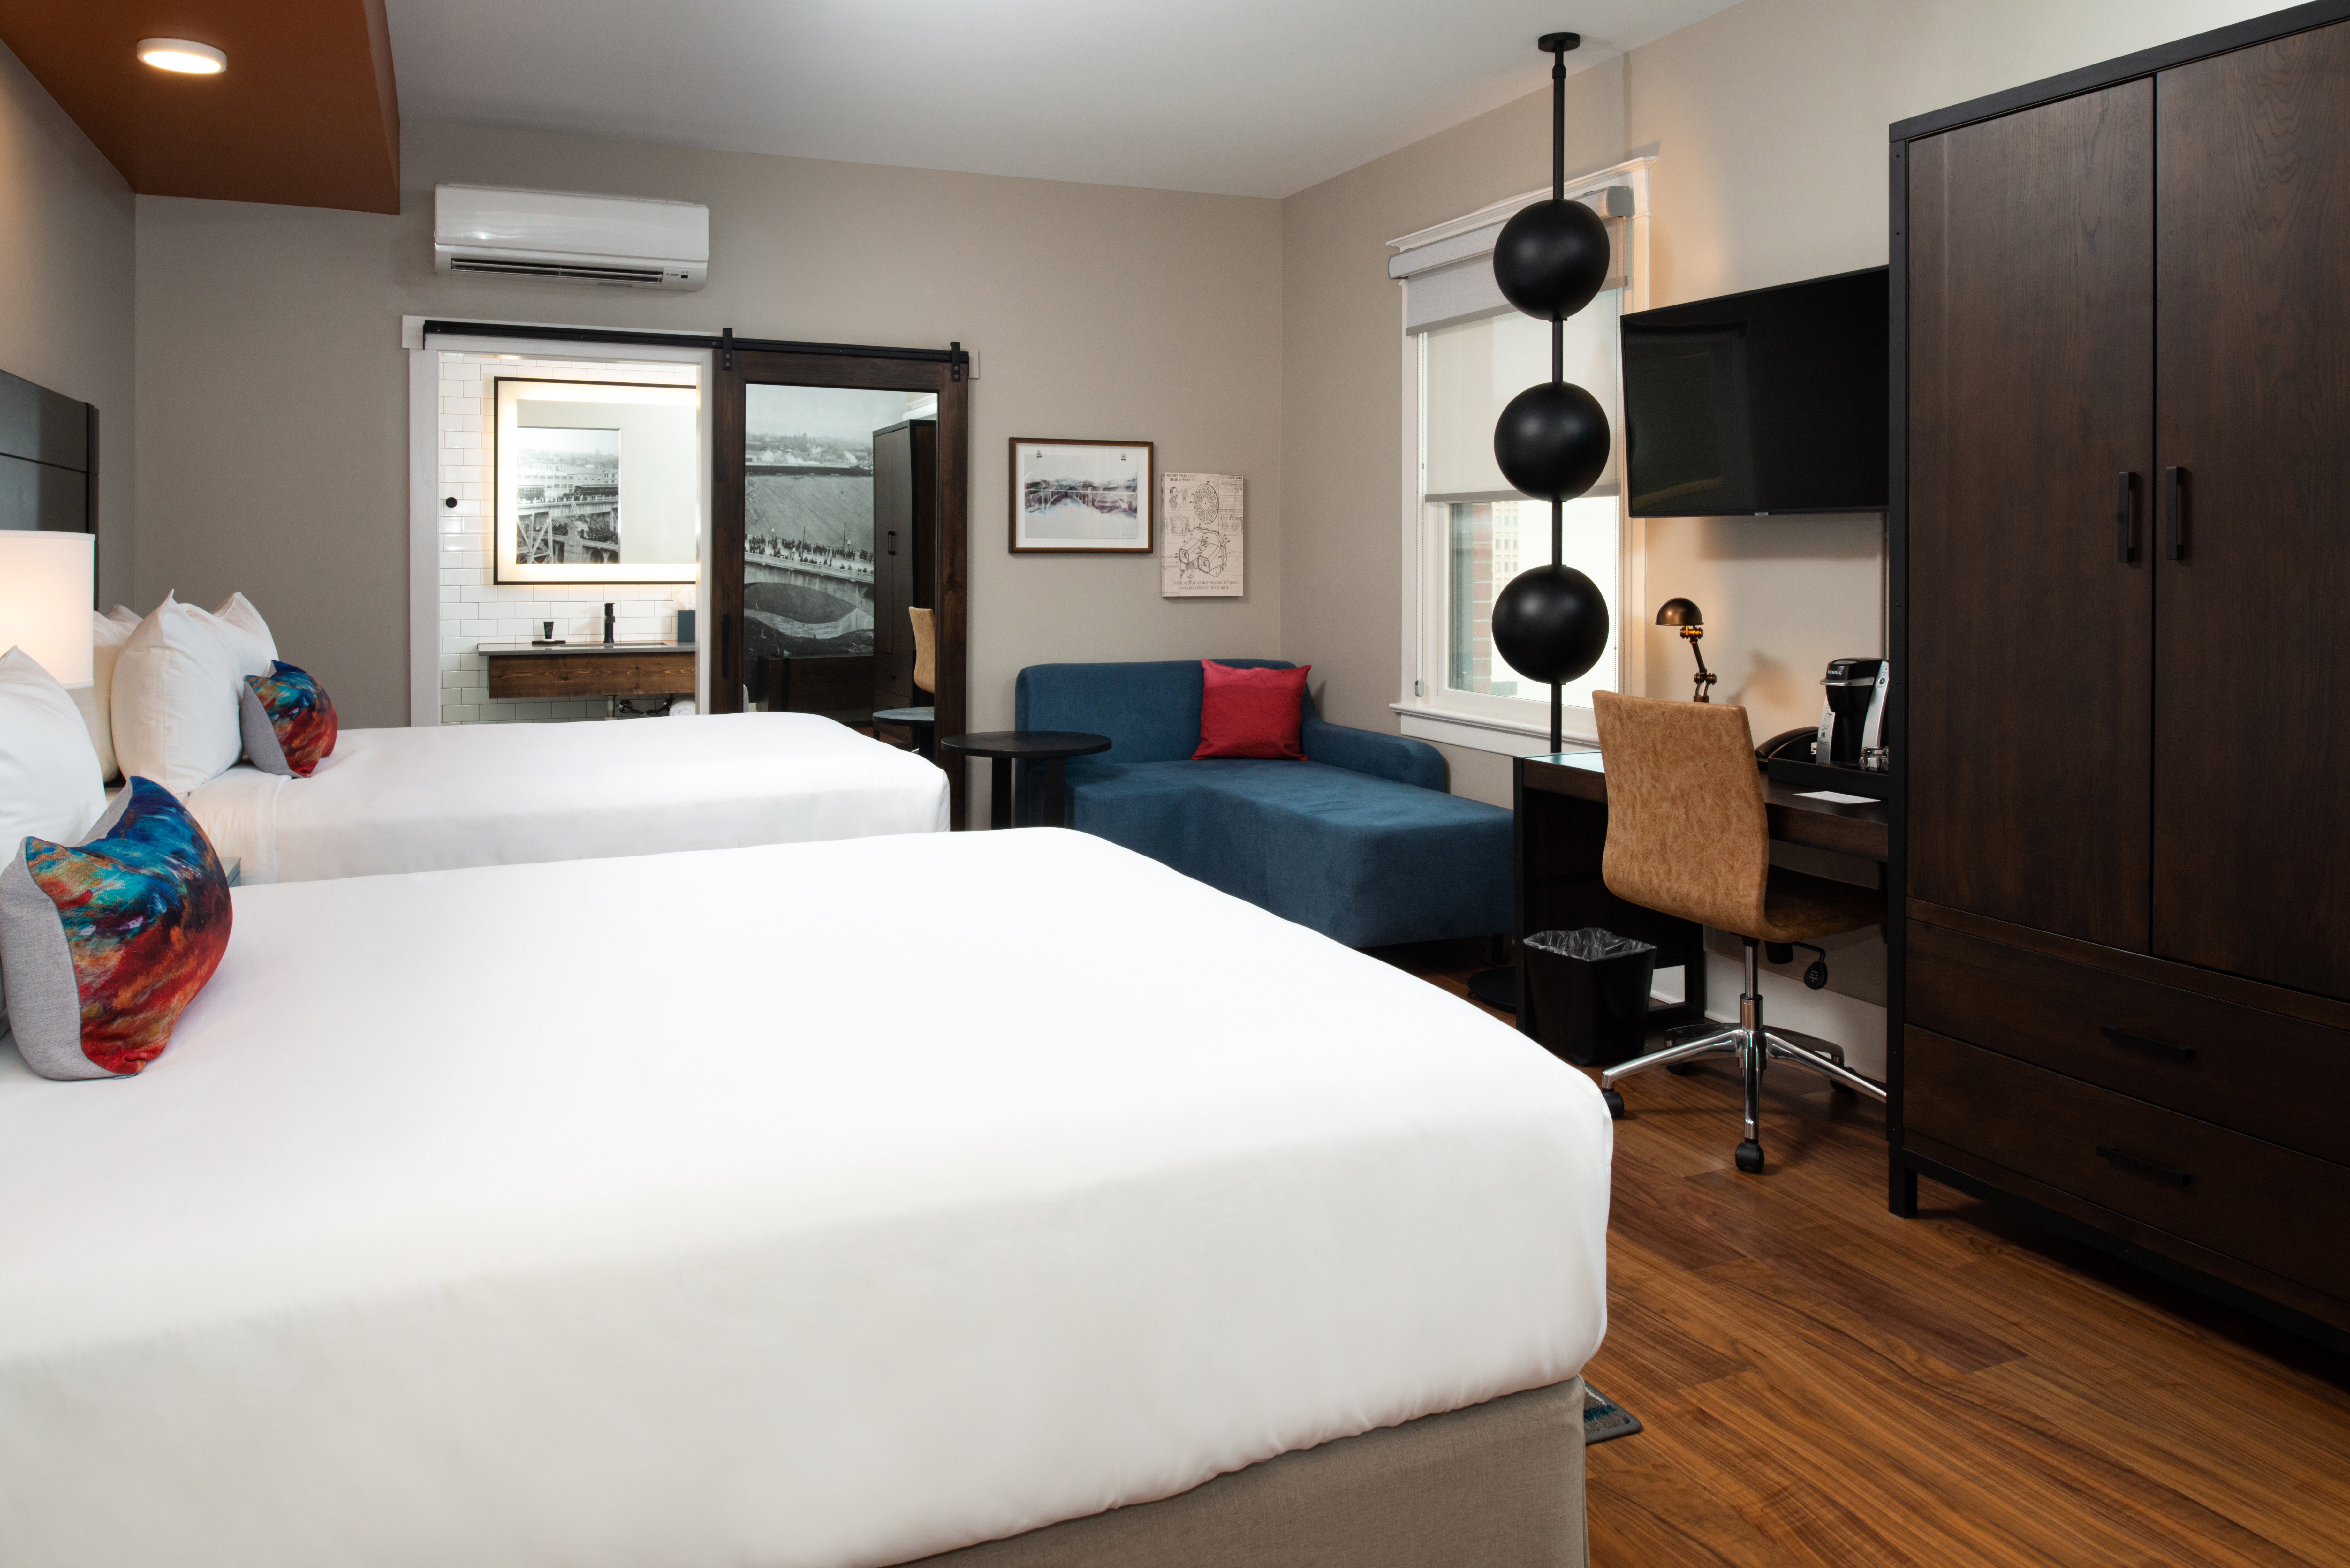 Hotel Indigo Spokane. Deluxe room with two queen beds. 